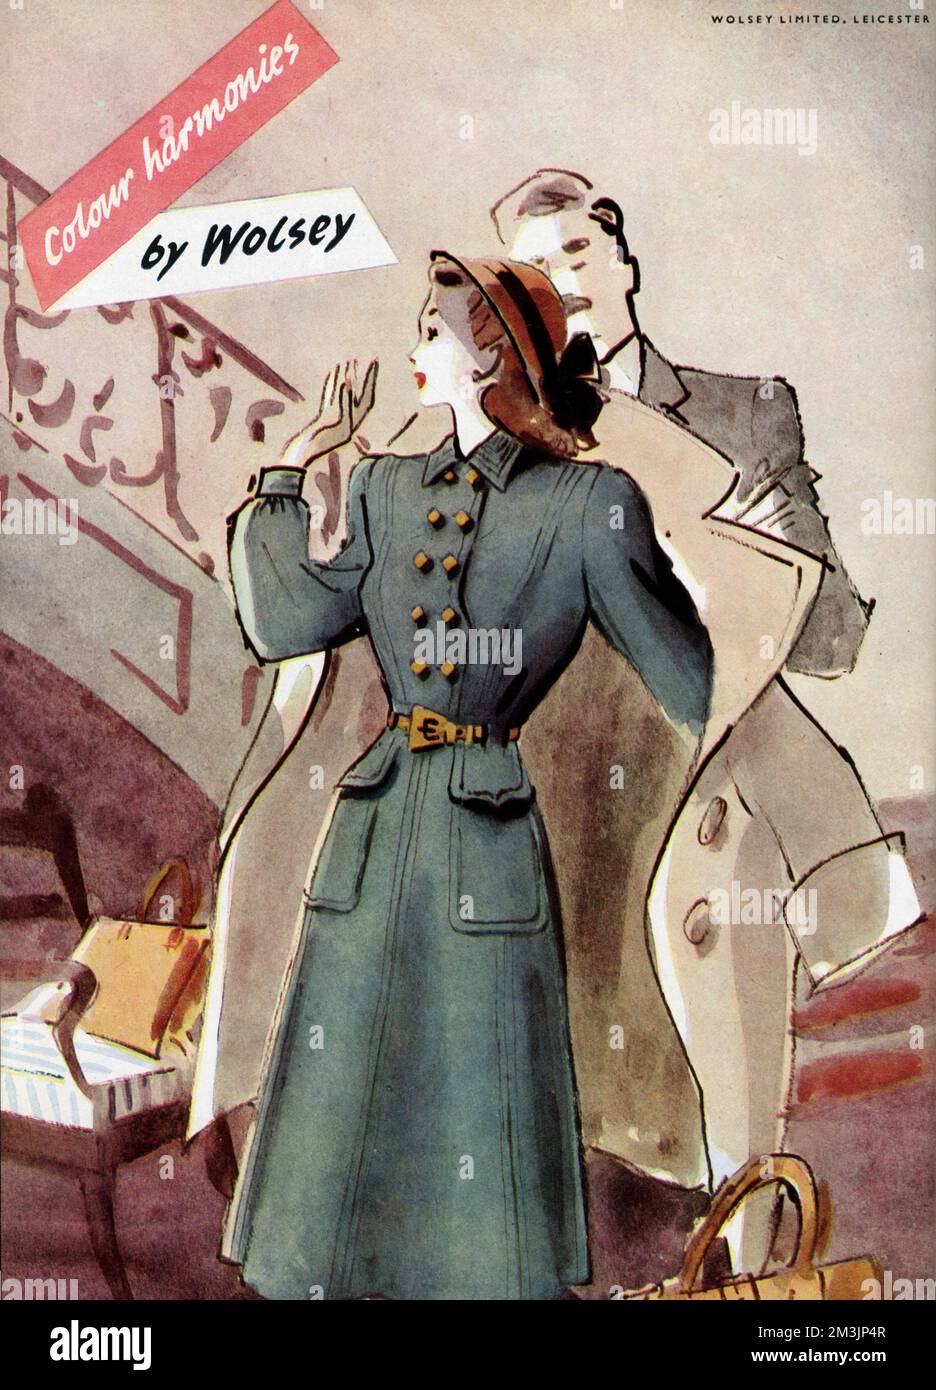 Werbung für Wolsey-Kleidung, die einen Mann zeigt, der einer Frau mit ihrem Mantel hilft. Datum: 1947 Stockfoto